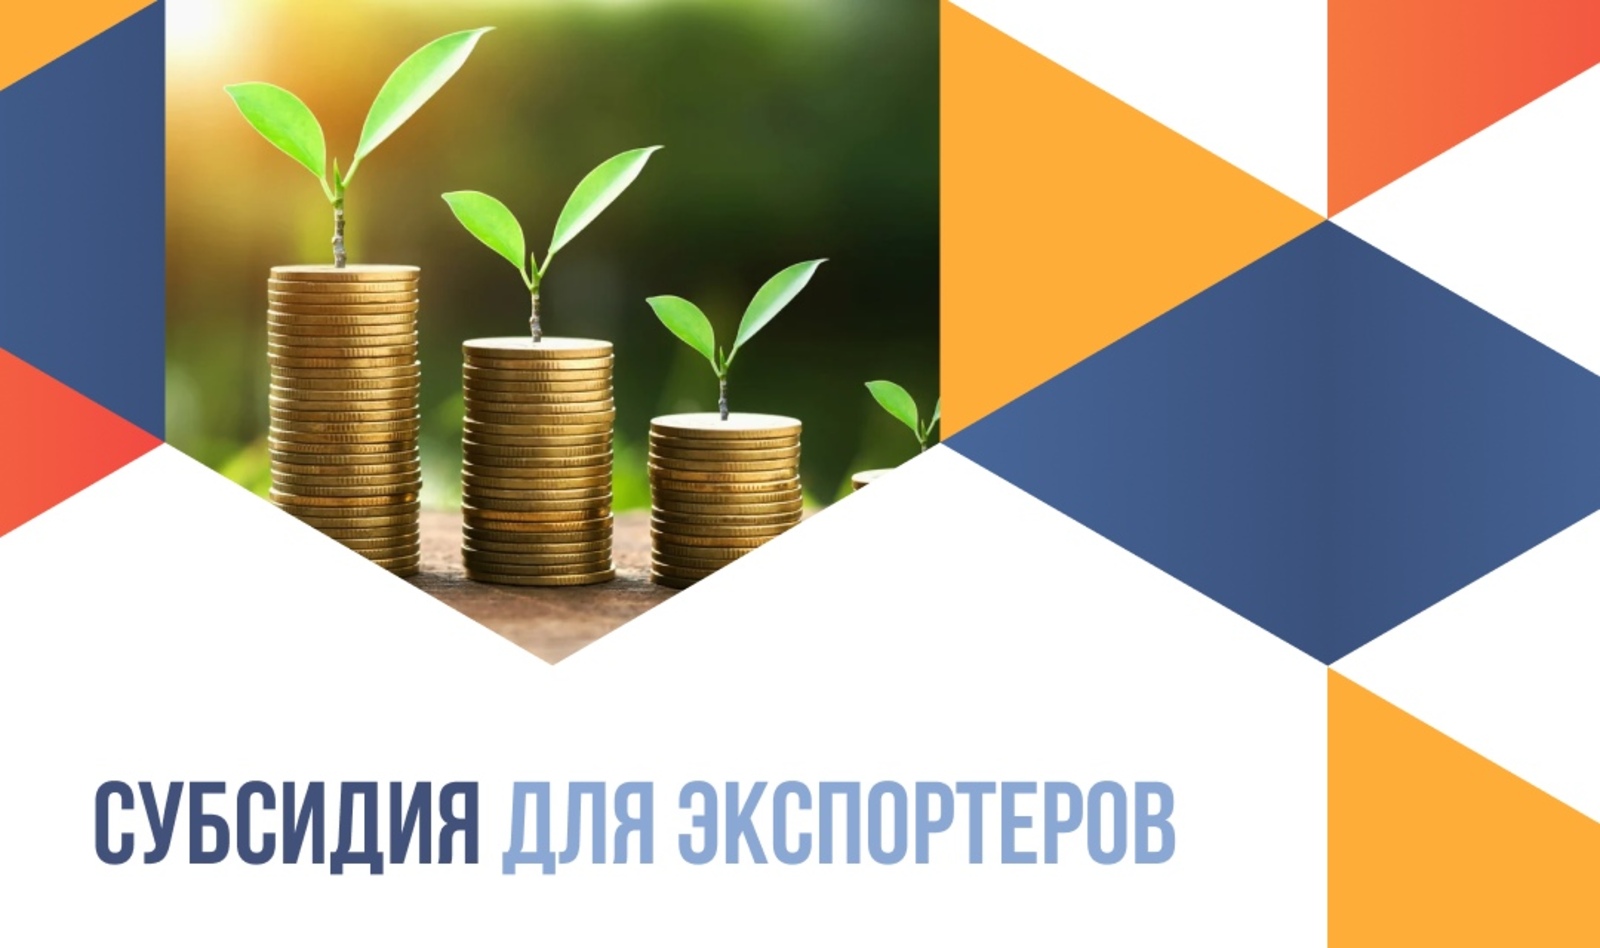 В Башкортостане стартовал прием заявок на возмещение затрат на логистику и сертификацию субъектам МСП